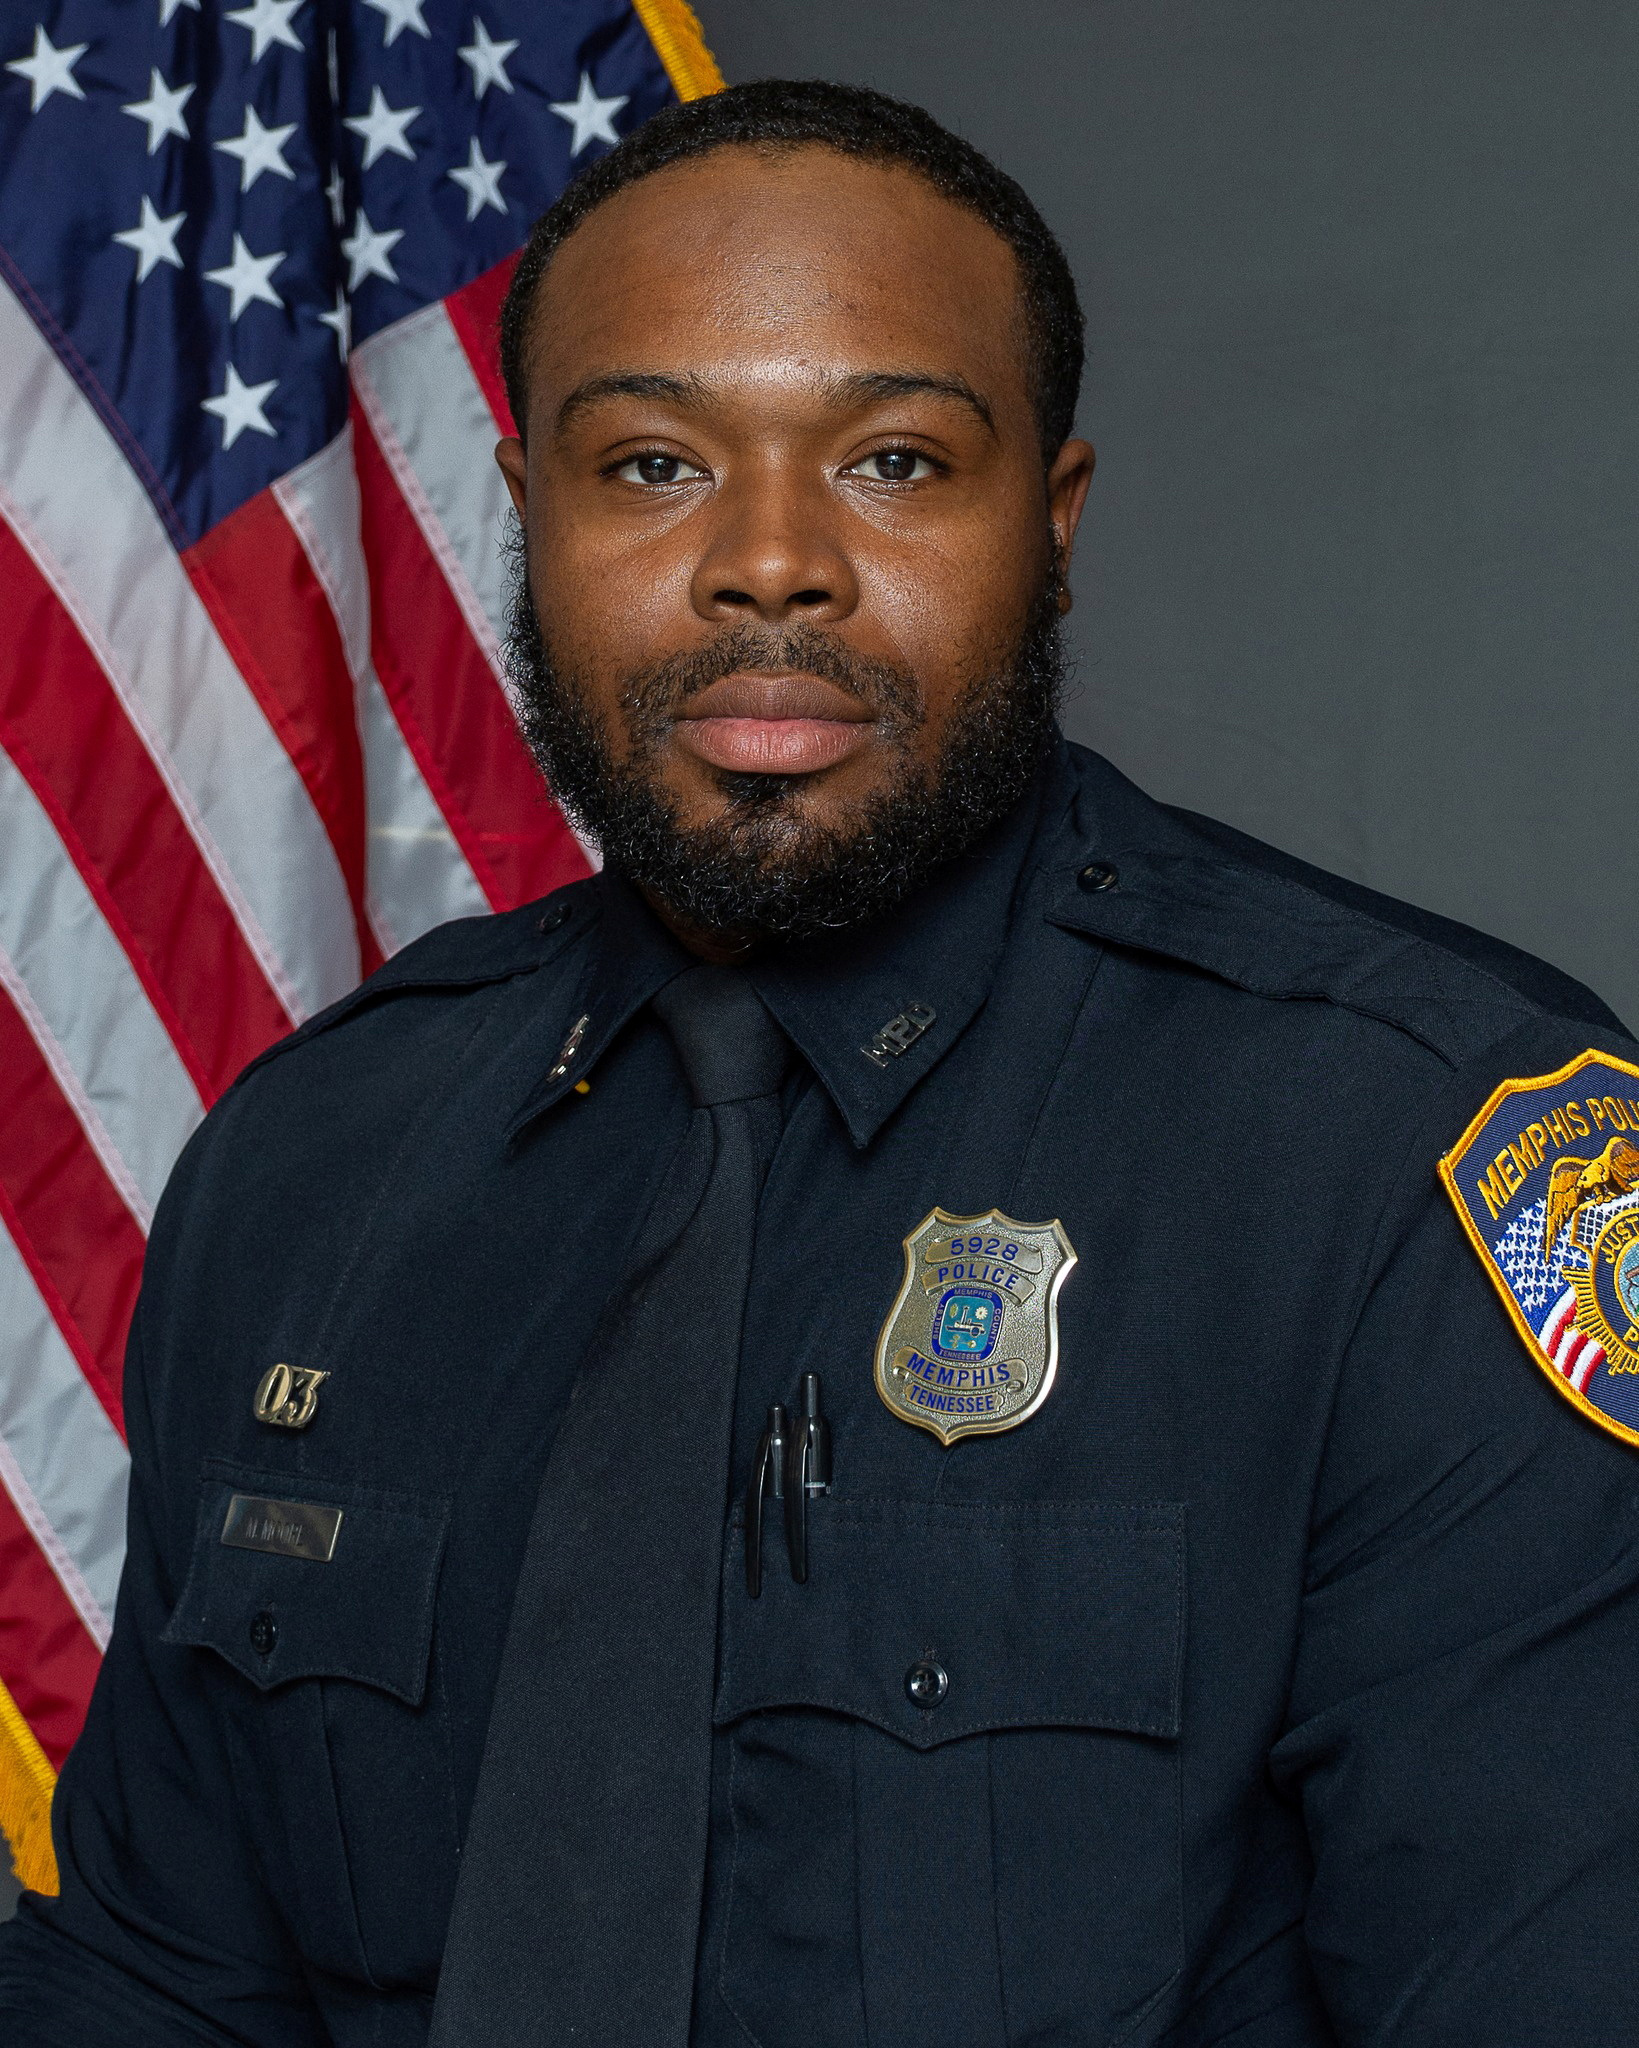 El oficial Demetrius Haley, que había sido contratado por el Departamento de Policía de Memphis en agosto de 2020 y fue despedido con otros cuatro oficiales después de su participación en una parada de tráfico que terminó con la muerte de Tire Nichols